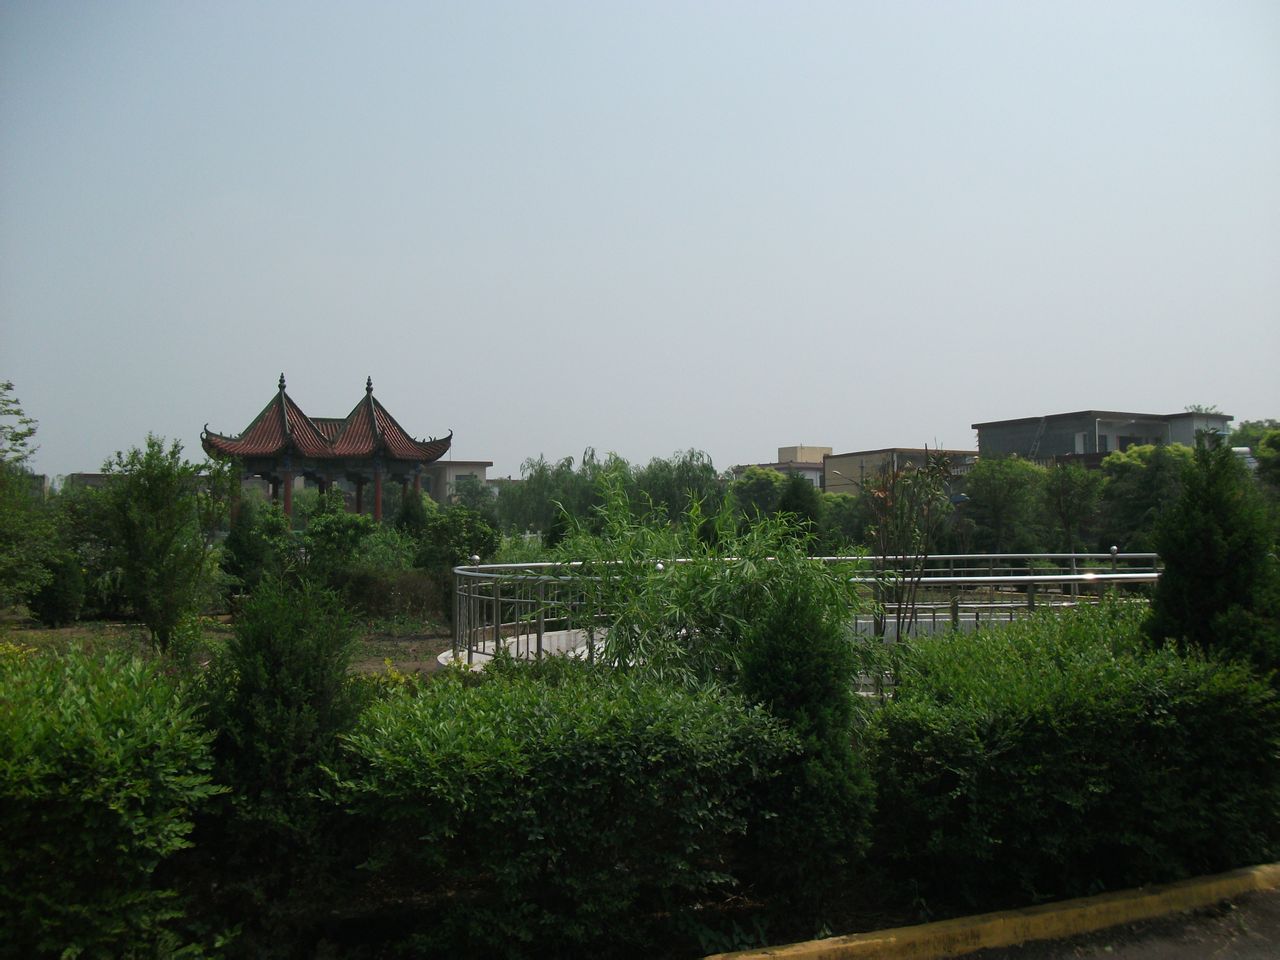 坡胡鎮水磨河村文化廣場